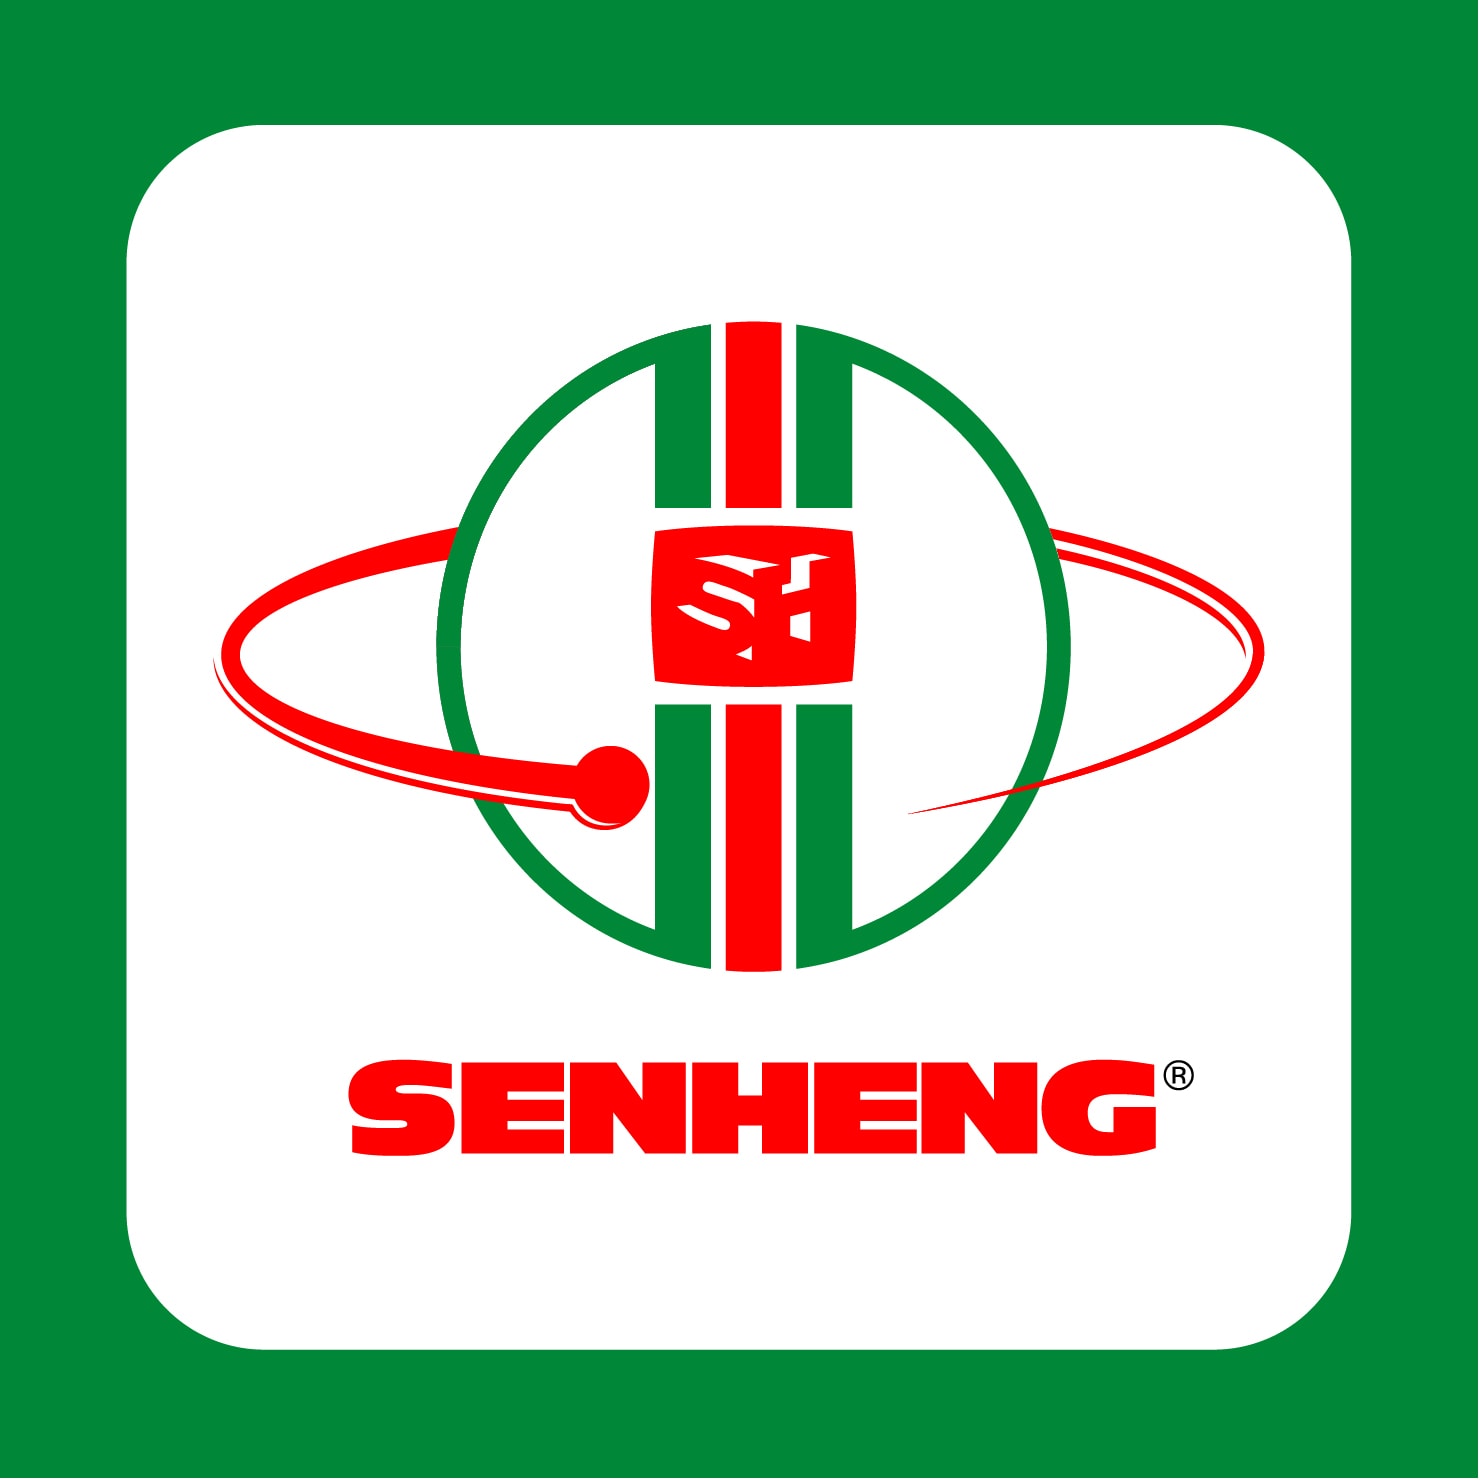 senheng-logo - Entrepreneur Campfire